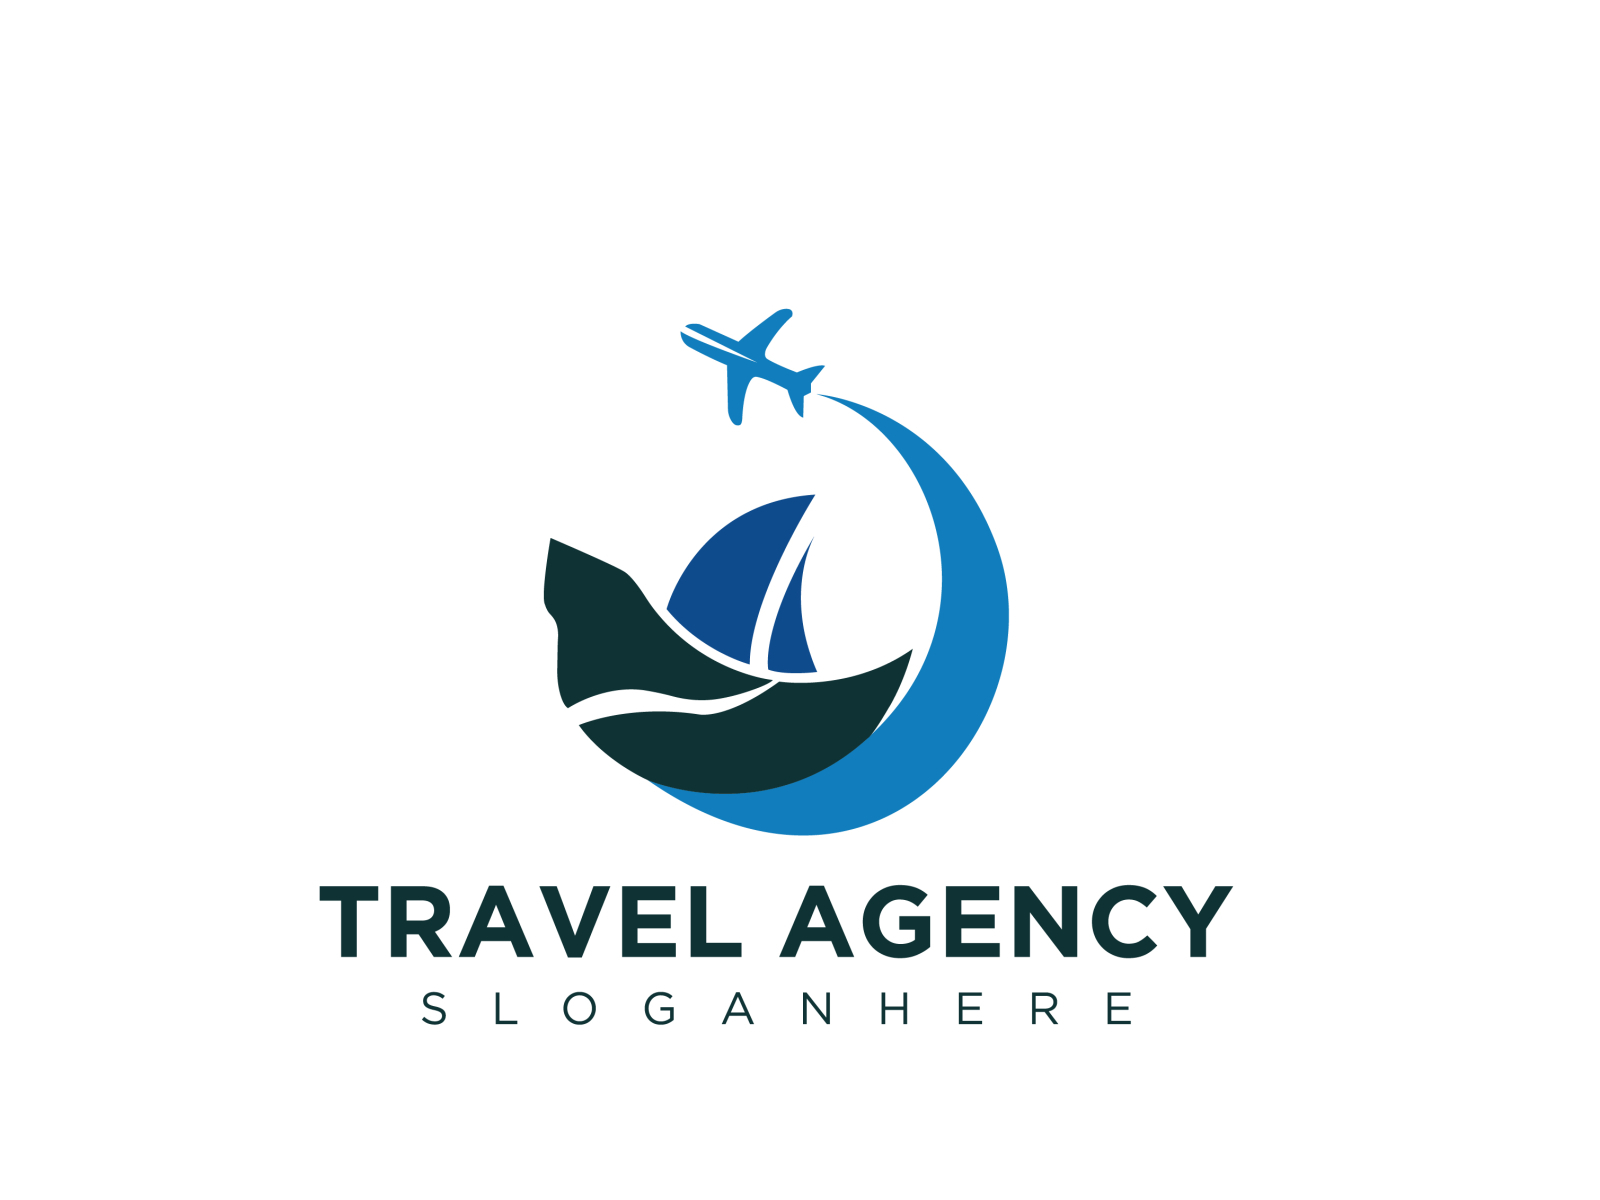 Logo du lịch đẹp cùng nhà thiết kế chuyên nghiệp – Click ngay để xem ...